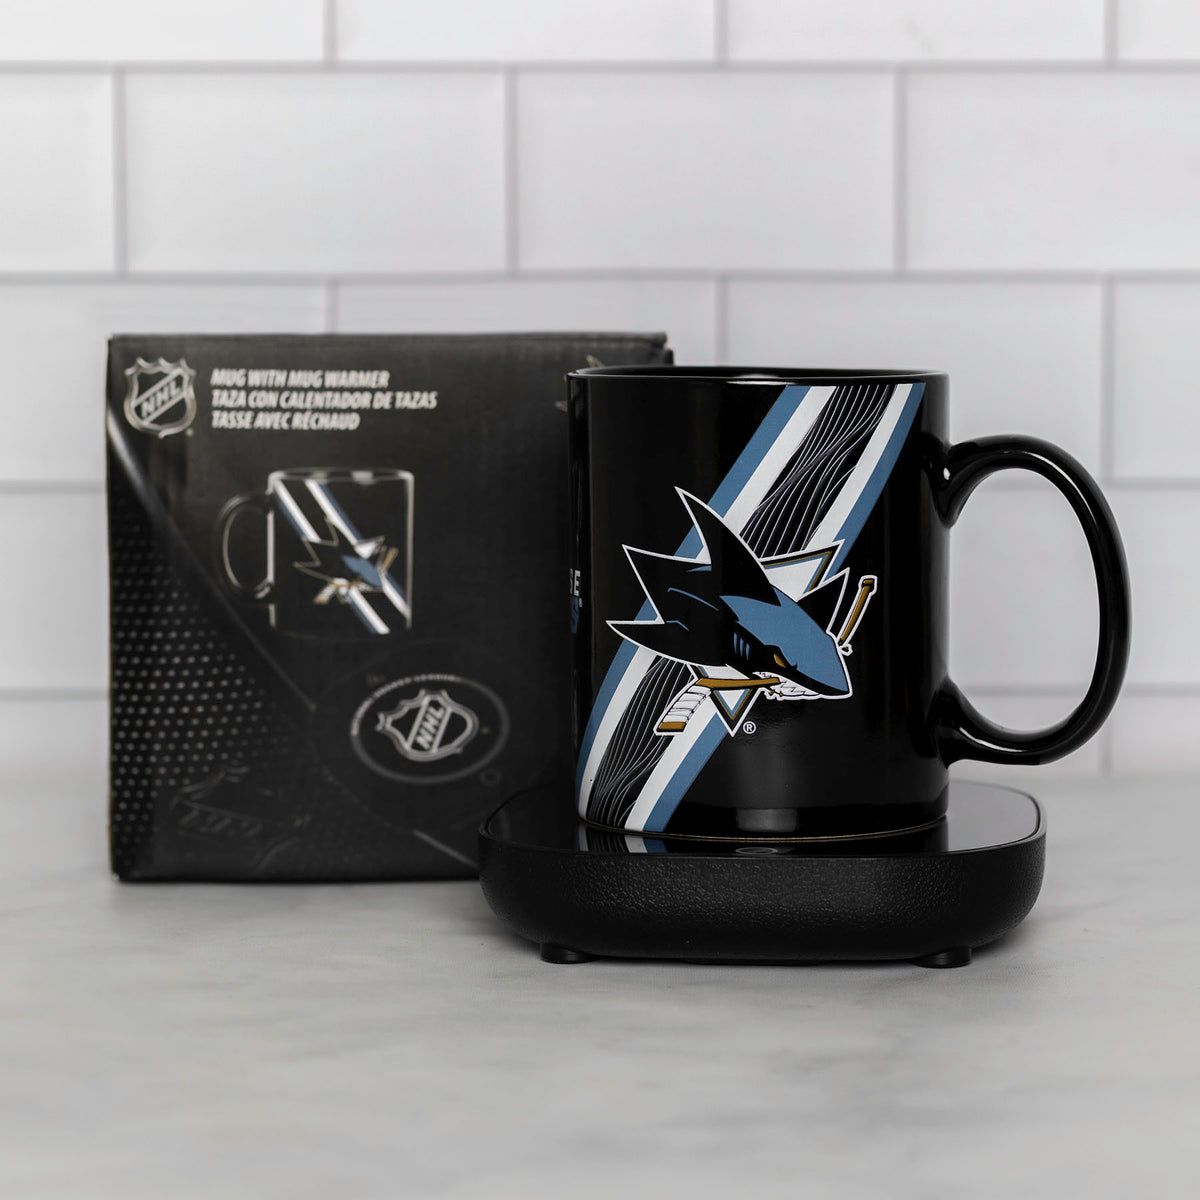 Uncanny Brands San Jose Sharks Logo Mug Warmer with Mug – Keeps Your Favorite Beverage Warm - Auto Shut On/Off